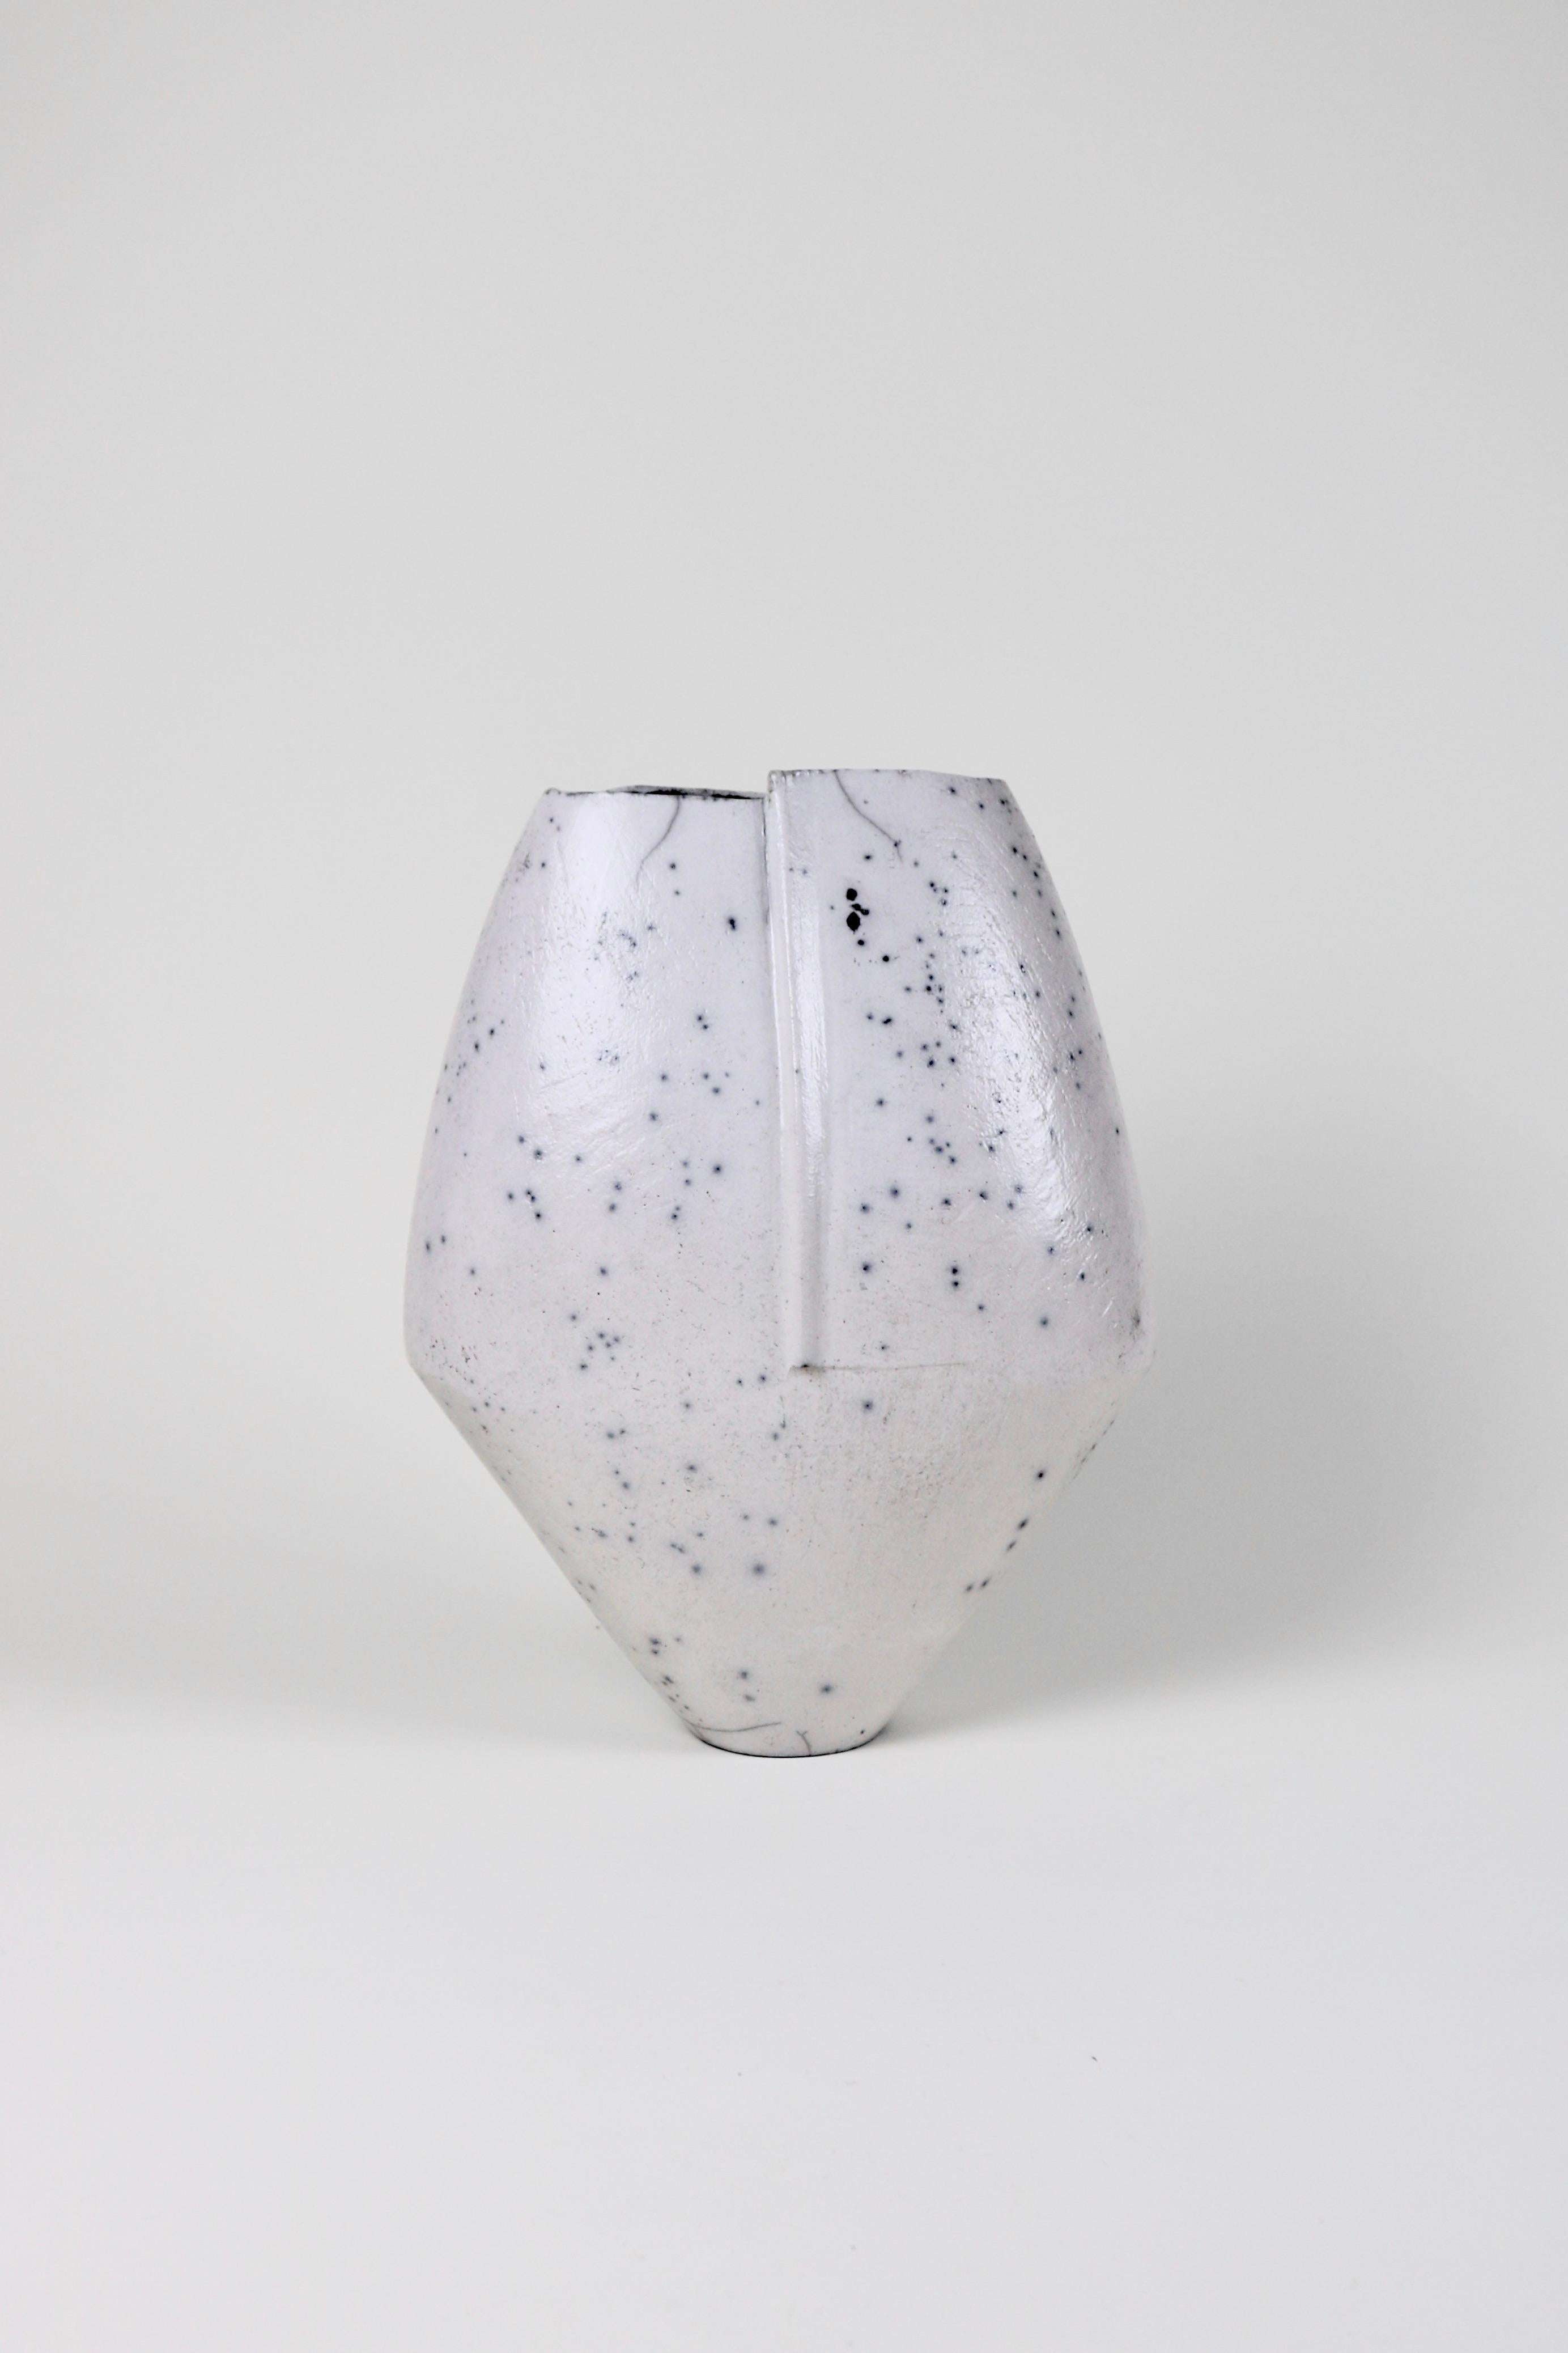 Un impressionnant vase à grande échelle de Stephen Murfitt. Le vase est fabriqué à la main et cuit au raku, laissant de délicates marques noires sur toute sa surface.

H 36cm
W 28cm
D 11cm